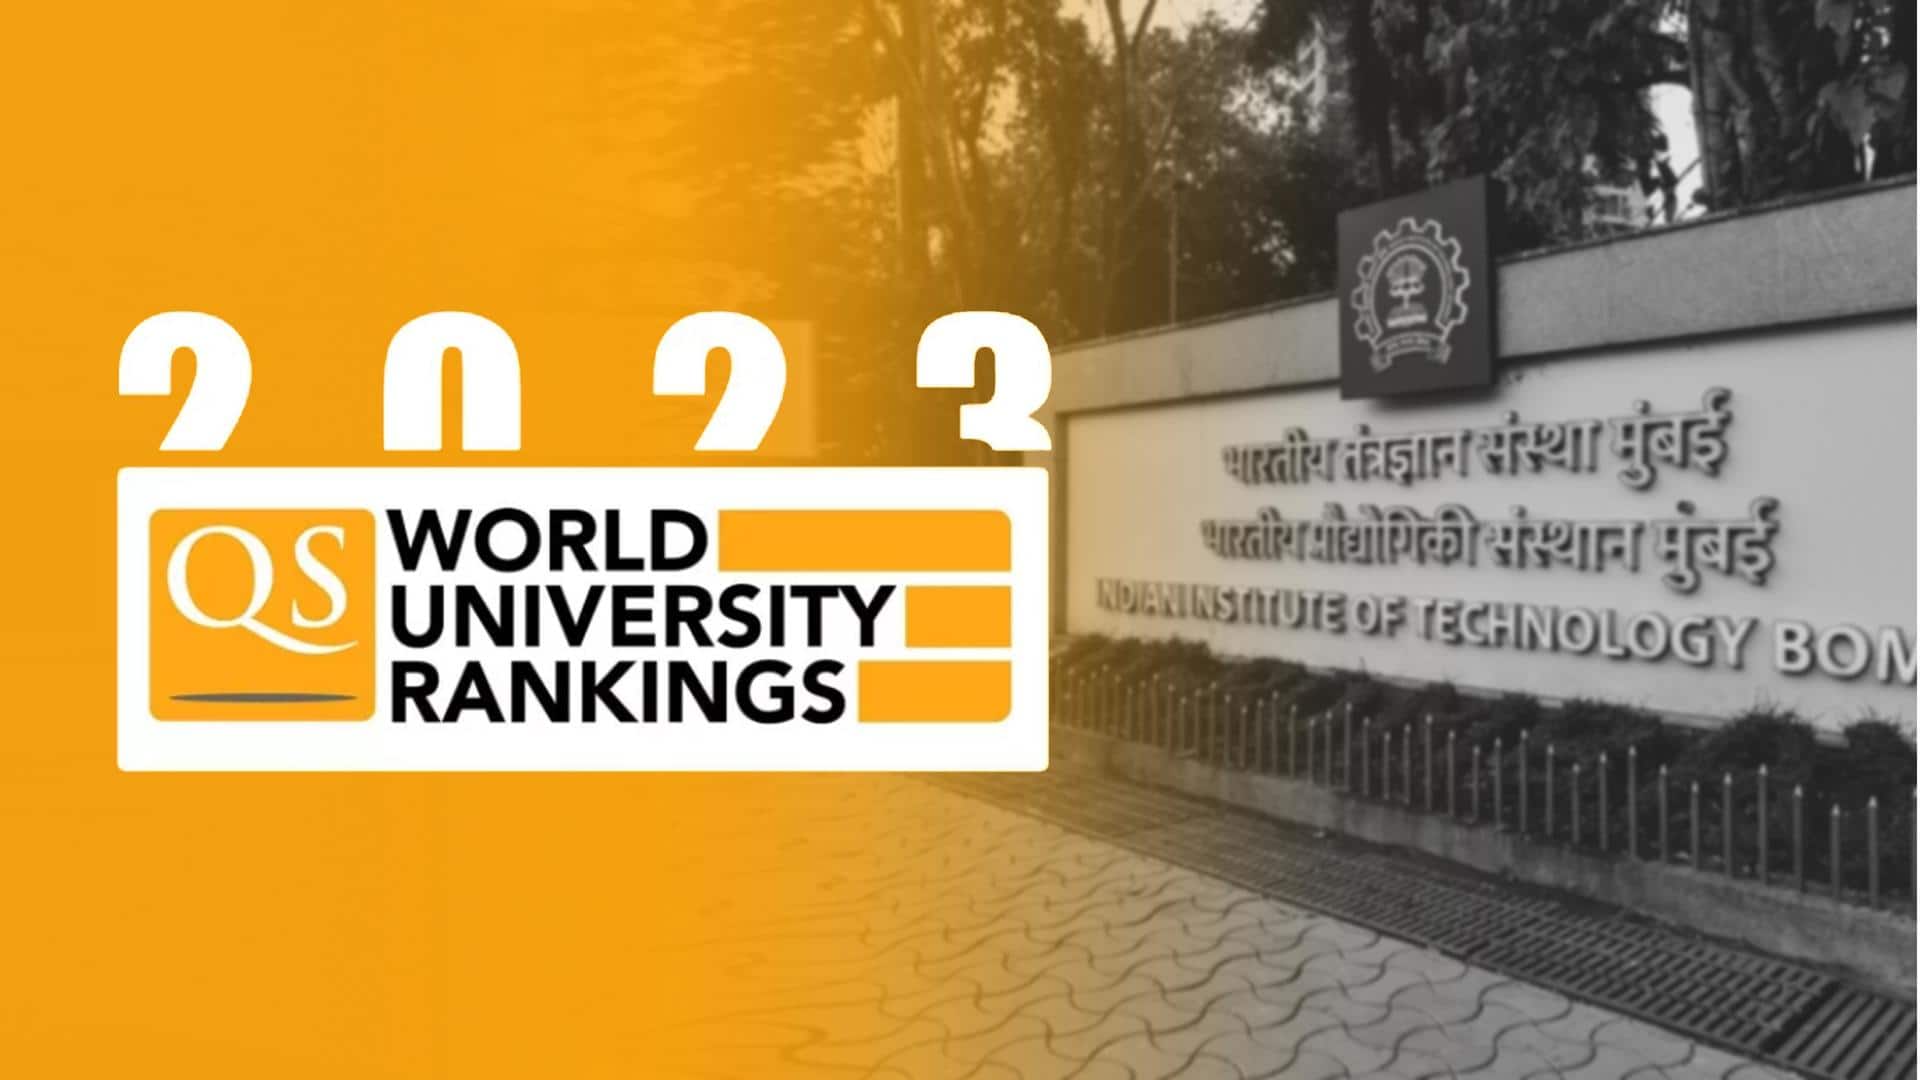 IIT Bombay among world's top 150 universities: Report 